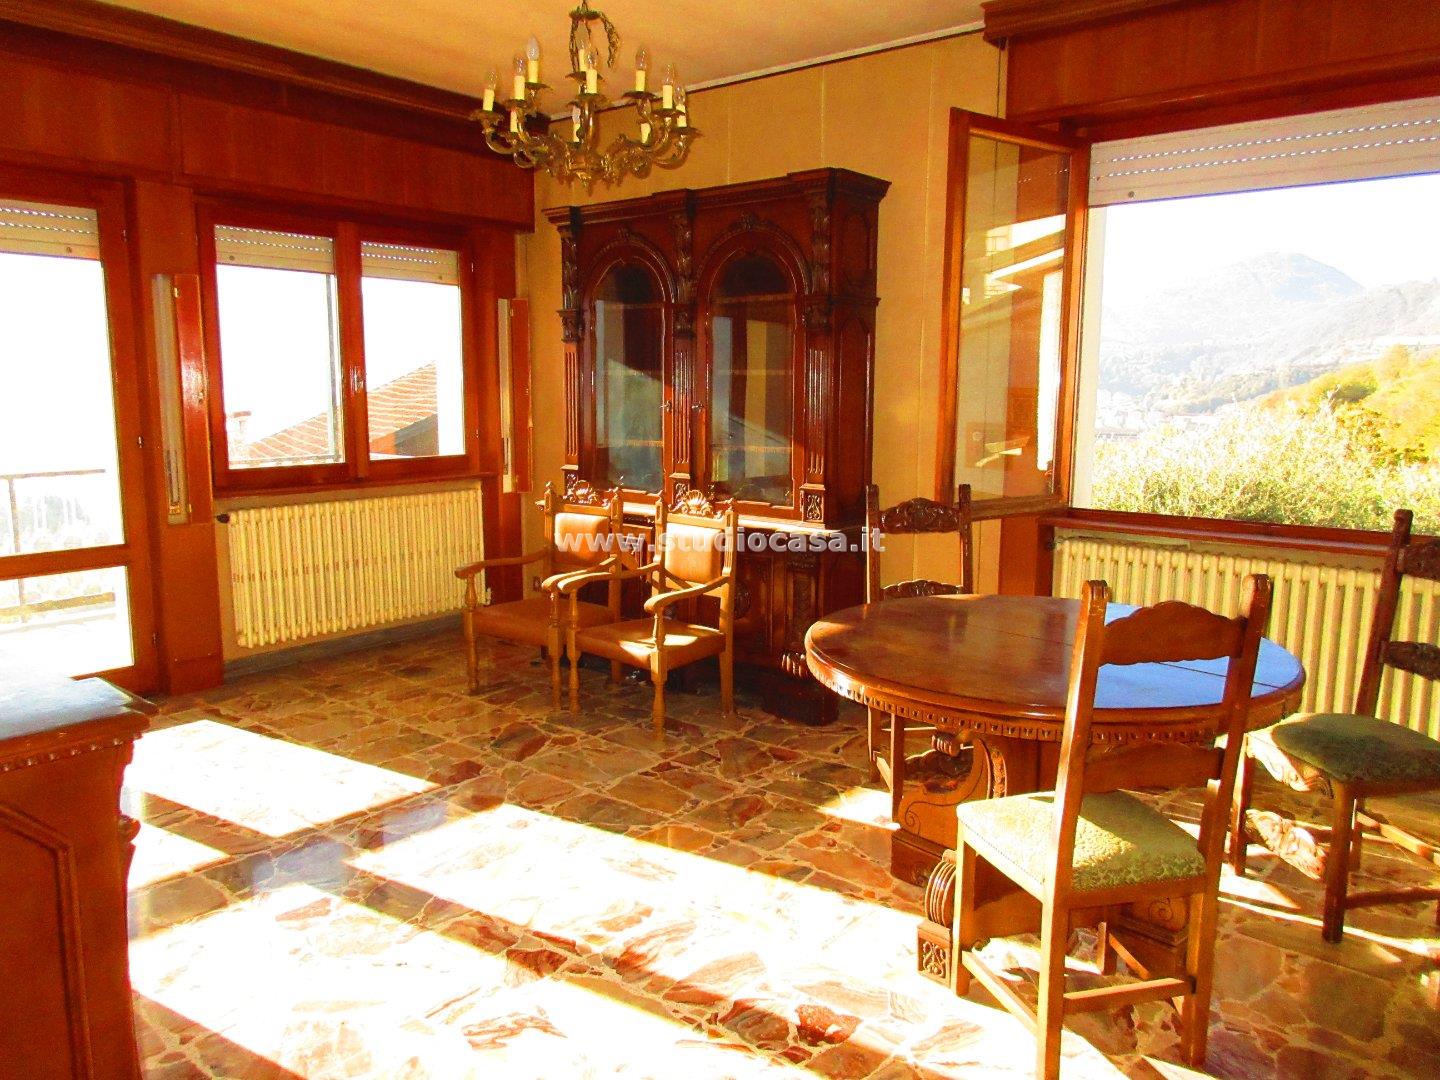 Casa Unifamiliare in vendita a Costa Volpino